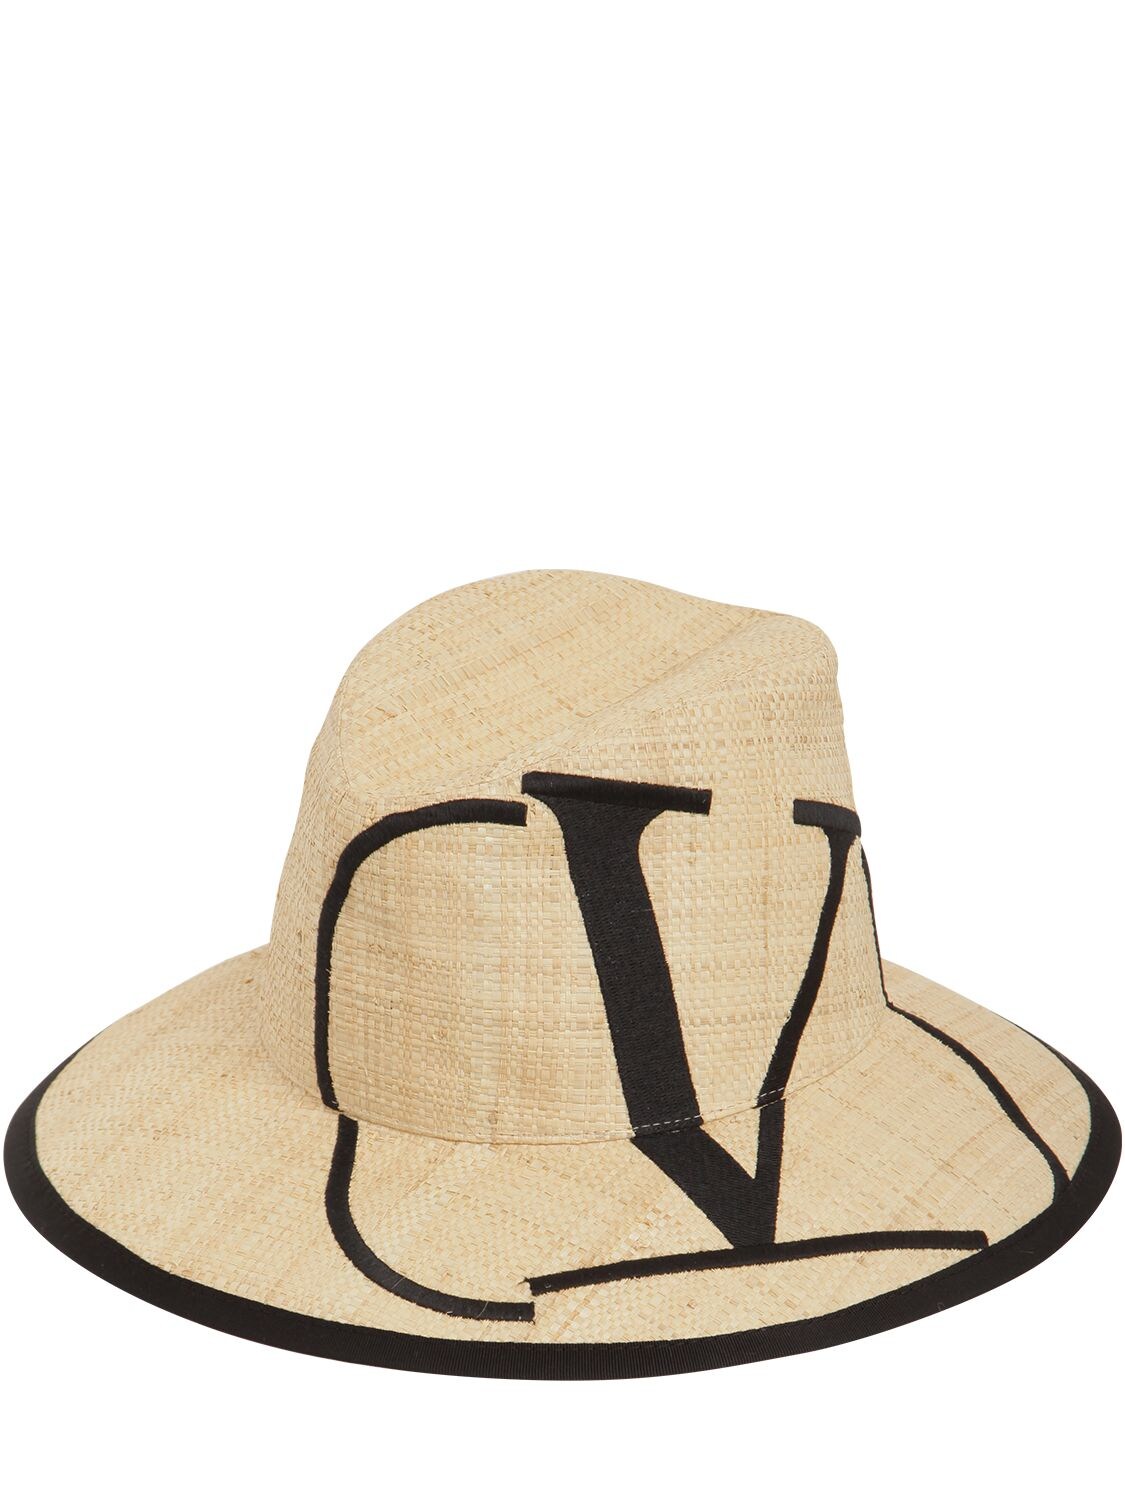 Valentino Garavani Vlogo Print Straw Hat In Natural